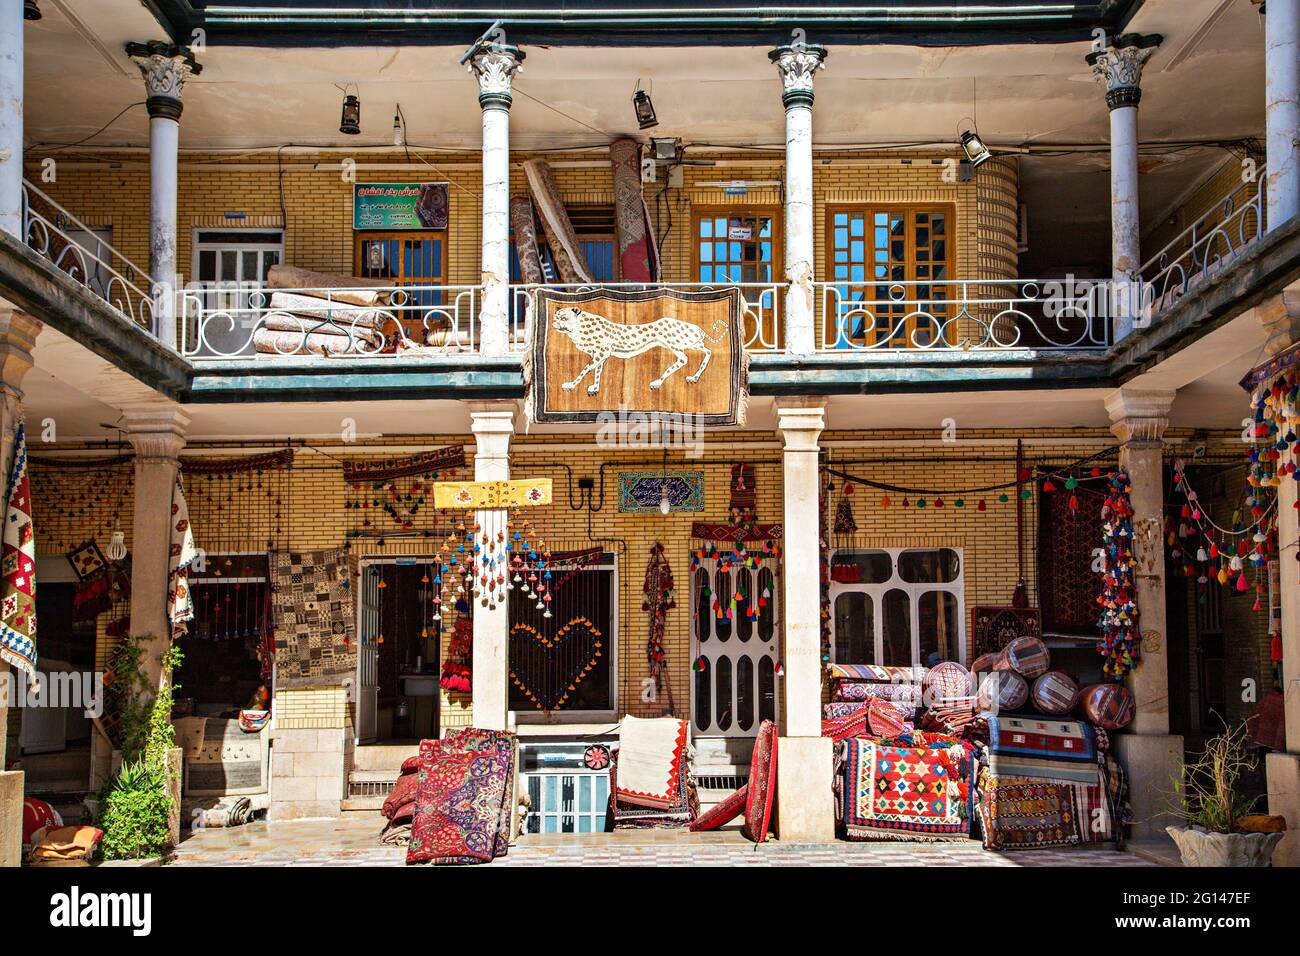 Mercado de alfombras persas en Shiraz, Irán Foto de stock